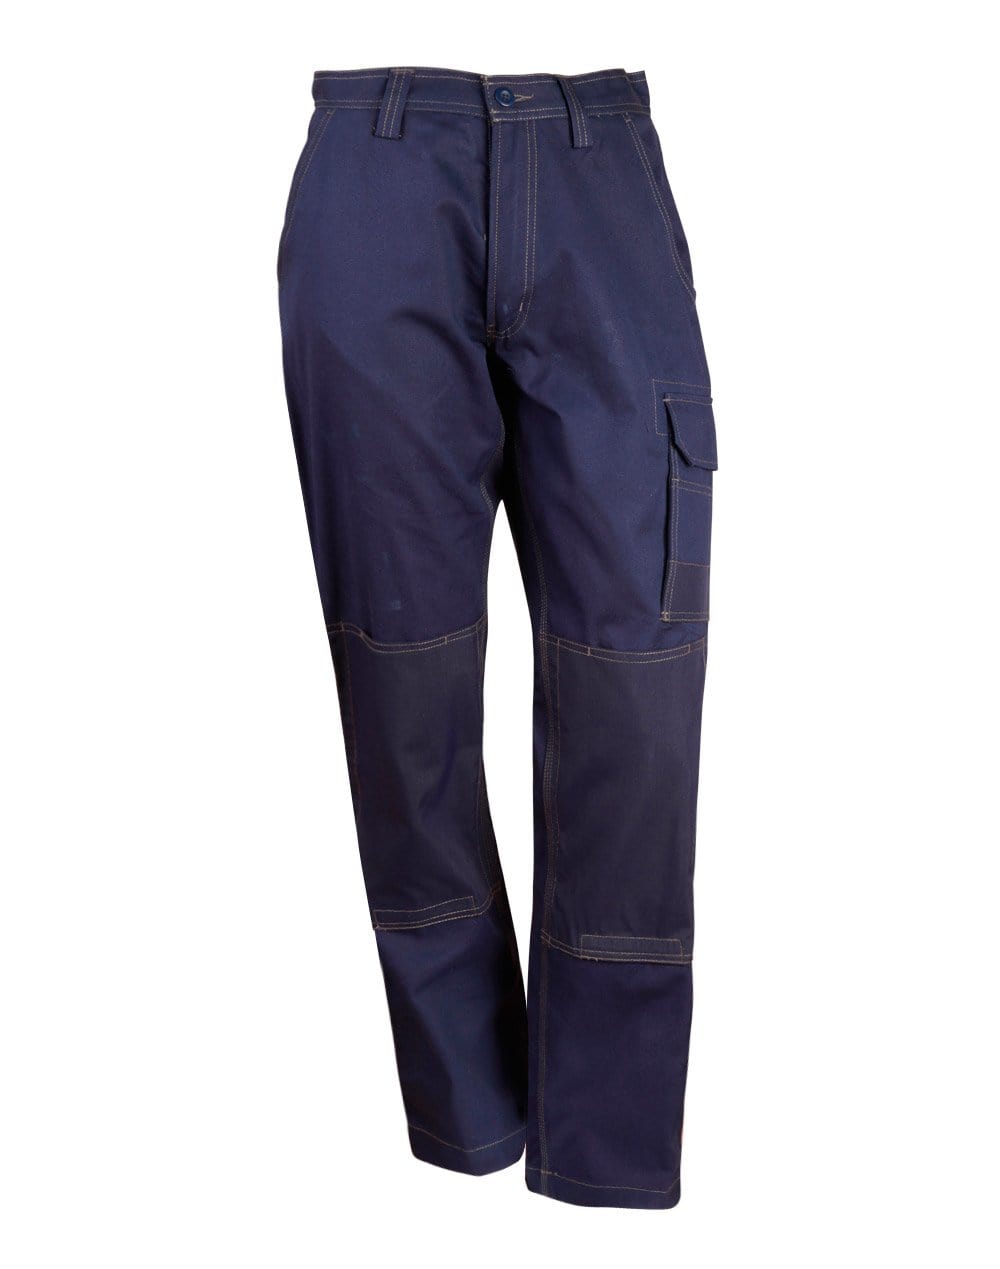 Cordura Semi-fitted Cordura Work Pants WP20 Work Wear Australian Industrial Wear 72R Navy 